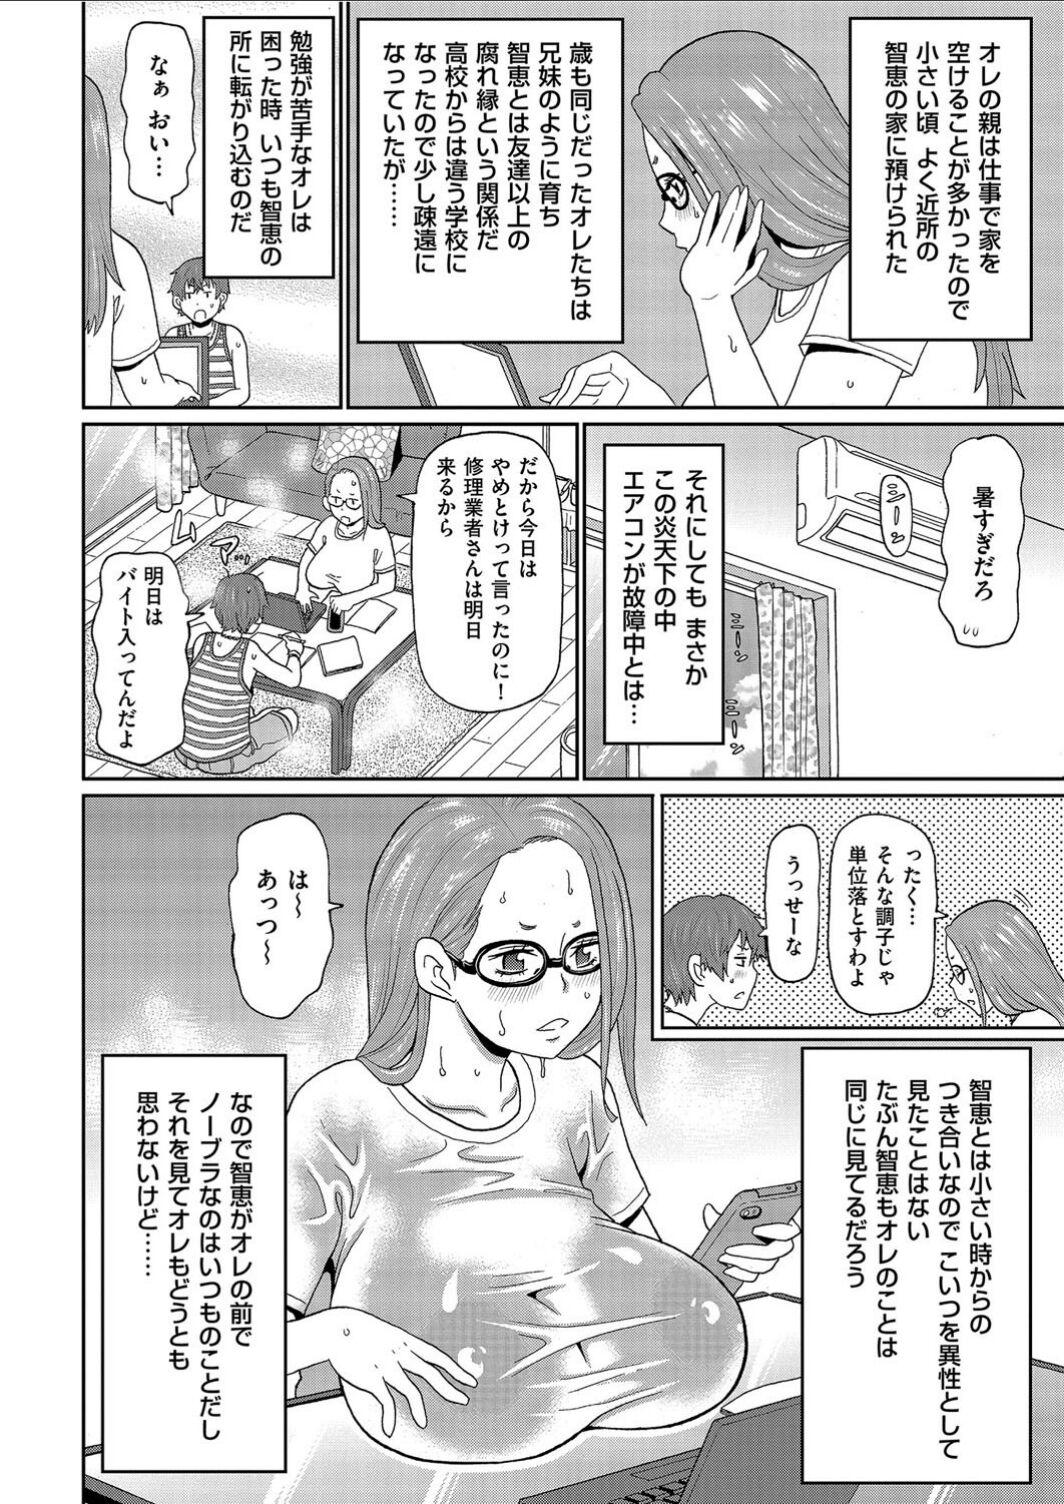 Short Manatsu no Mushi Megane Dildo - Page 2